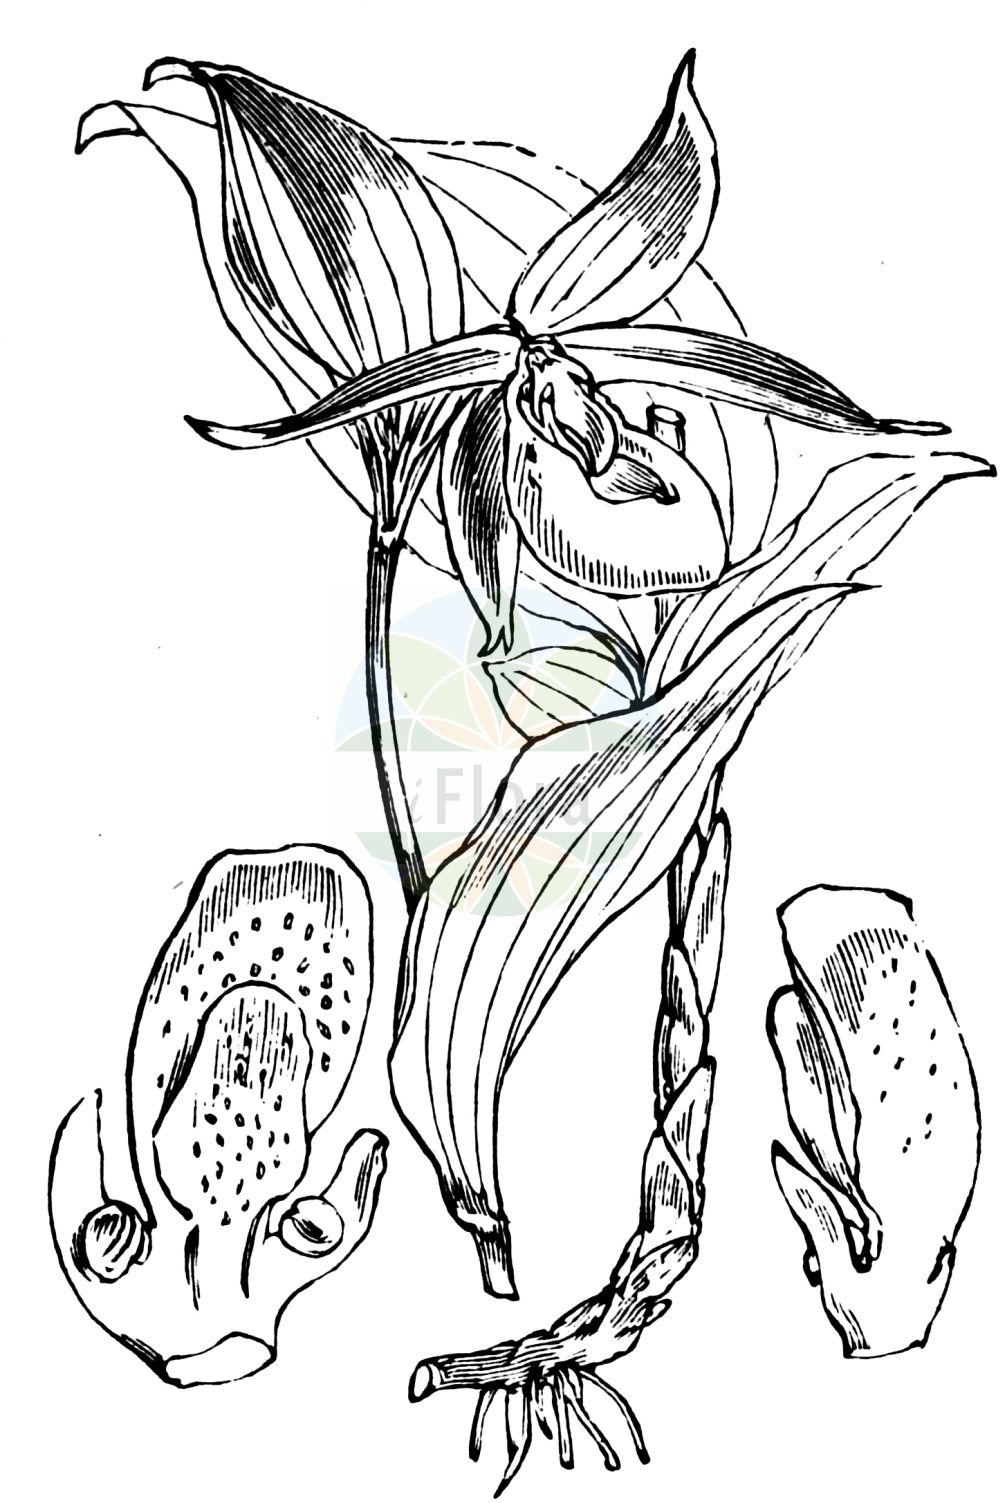 Historische Abbildung von Cypripedium calceolus (Gelber Frauenschuh - Lady's-slipper). Das Bild zeigt Blatt, Bluete, Frucht und Same. ---- Historical Drawing of Cypripedium calceolus (Gelber Frauenschuh - Lady's-slipper). The image is showing leaf, flower, fruit and seed.(Cypripedium calceolus,Gelber Frauenschuh,Lady's-slipper,Calceolus alternifolius,Calceolus marianus,Cypripedilon marianus,Cypripedium alternifolium,Cypripedium atsmori,Cypripedium boreale,Cypripedium calceolus,Cypripedium cruciatum,Cypripedium ferrugineum,Cypripedium microsaccos,Gelber Frauenschuh,Frauenschuh,Lady's-slipper,Lady's Slipper Orchid,Cypripedium,Frauenschuh,Lady's Slipper,Orchidaceae,Knabenkrautgewächse,Orchid family,Blatt,Bluete,Frucht,Same,leaf,flower,fruit,seed,Fitch et al. (1880))